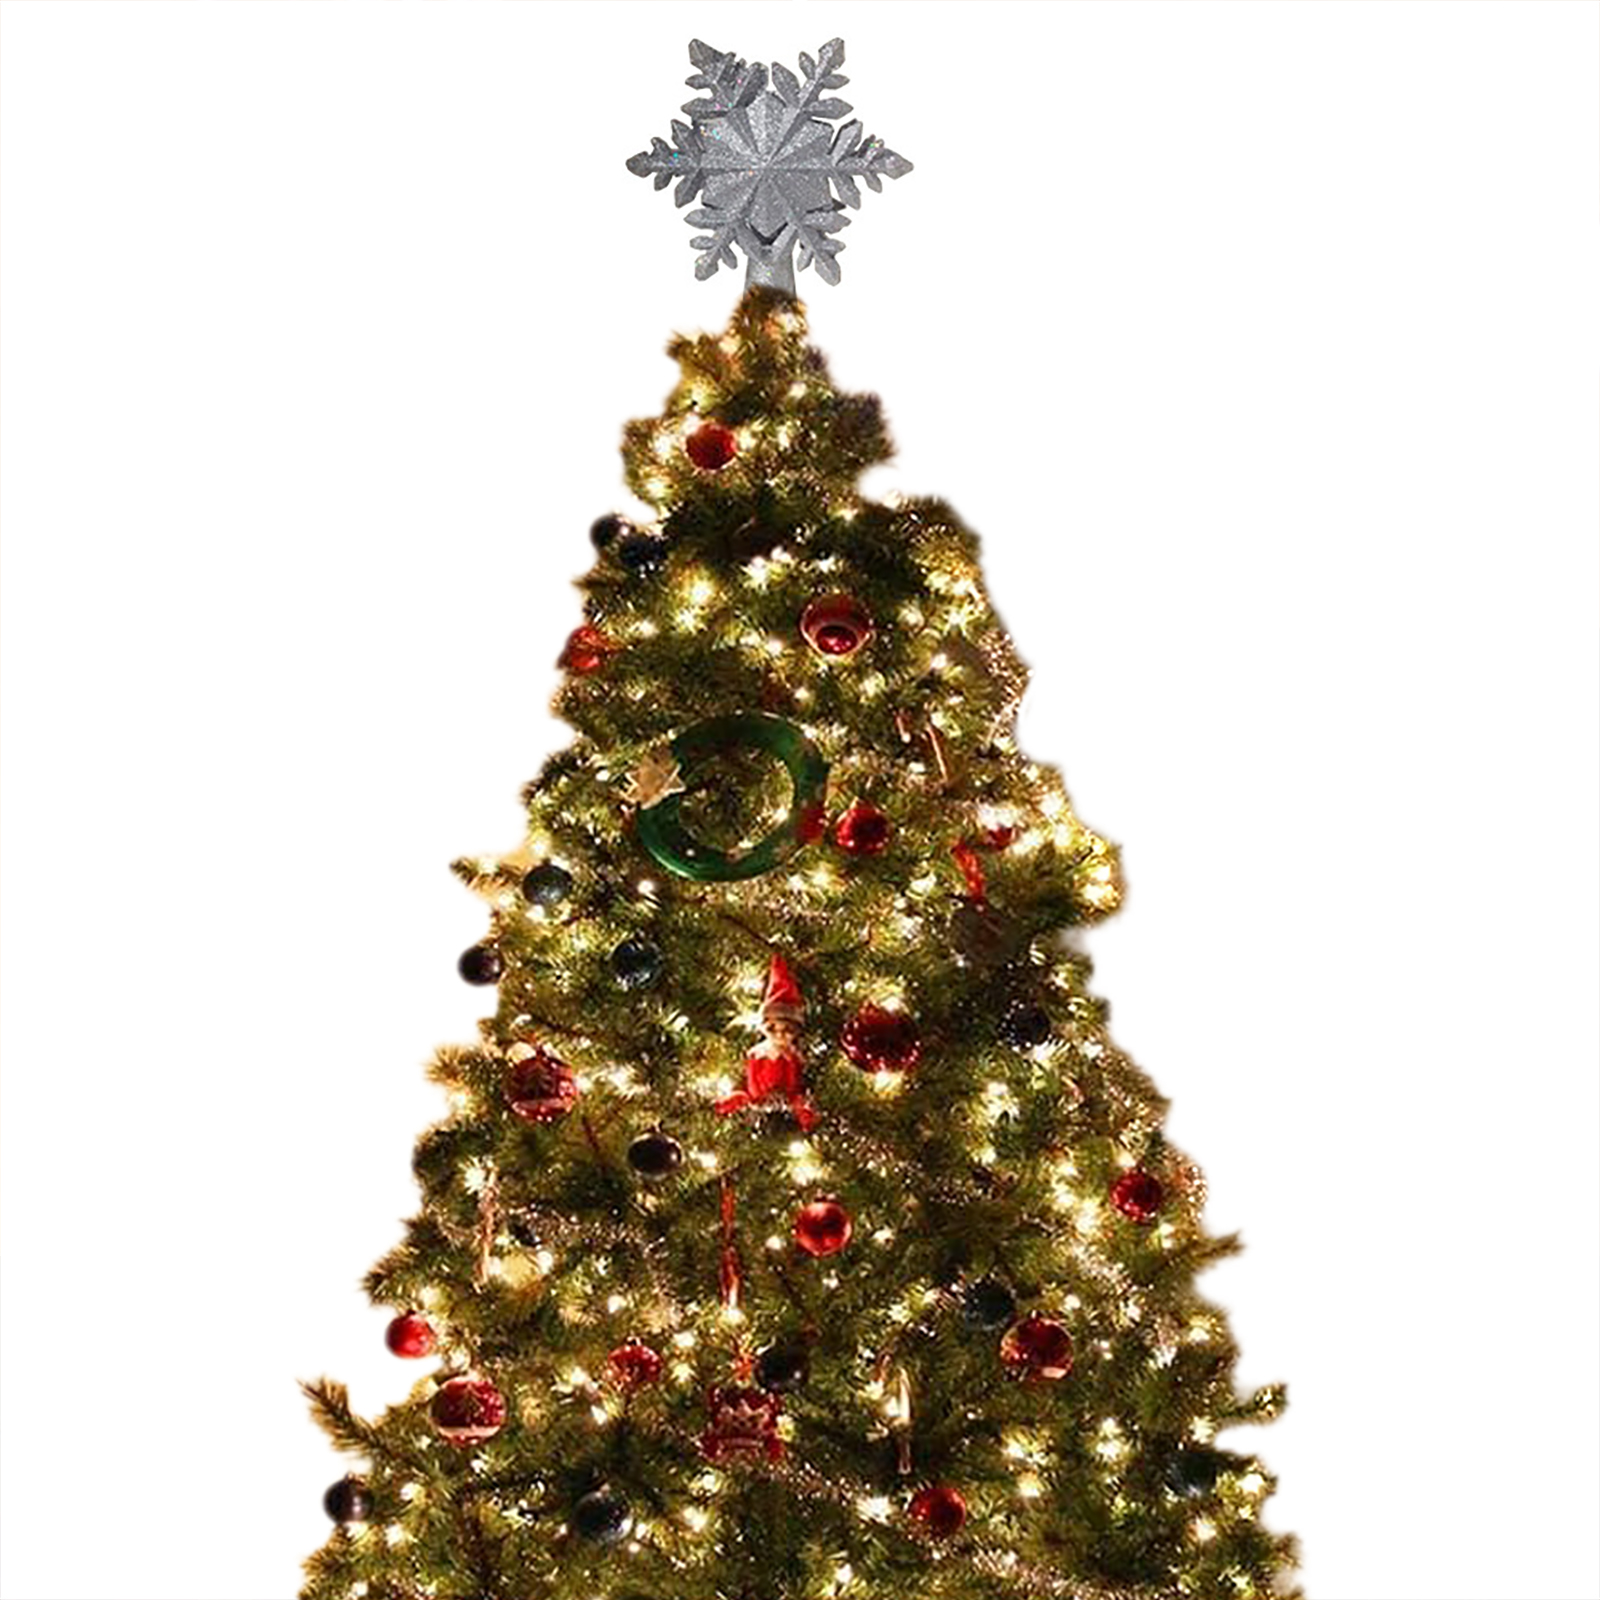 LED Christmas Tree Topper Lights Built-in LED Projector Magic Project Light For Christmas Tree Decorations